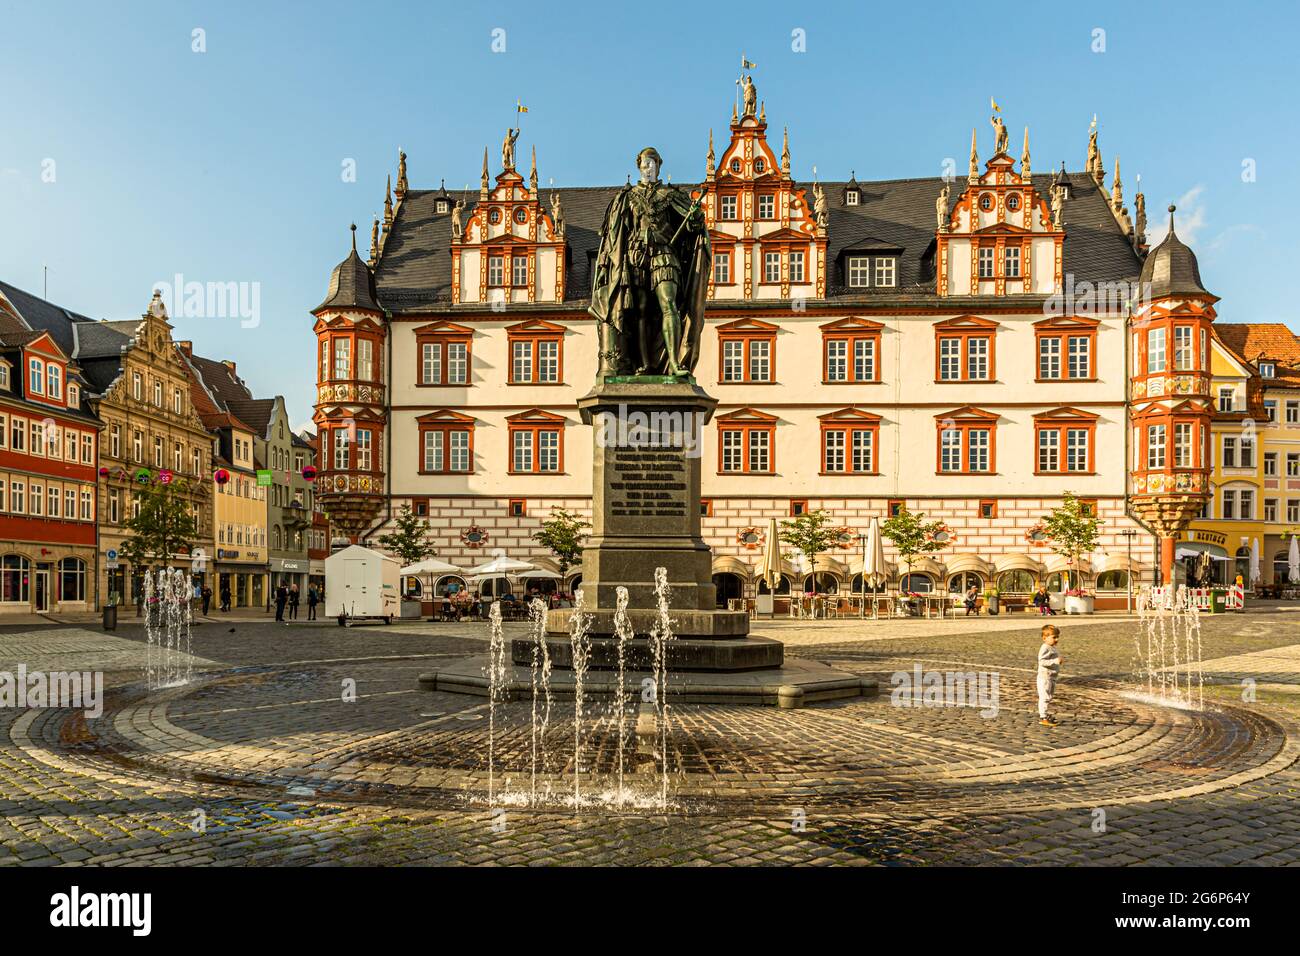 Monument du Prince Albert de Saxe-Coburg et Gotha en face de la Maison de ville de Coburg, Allemagne Banque D'Images